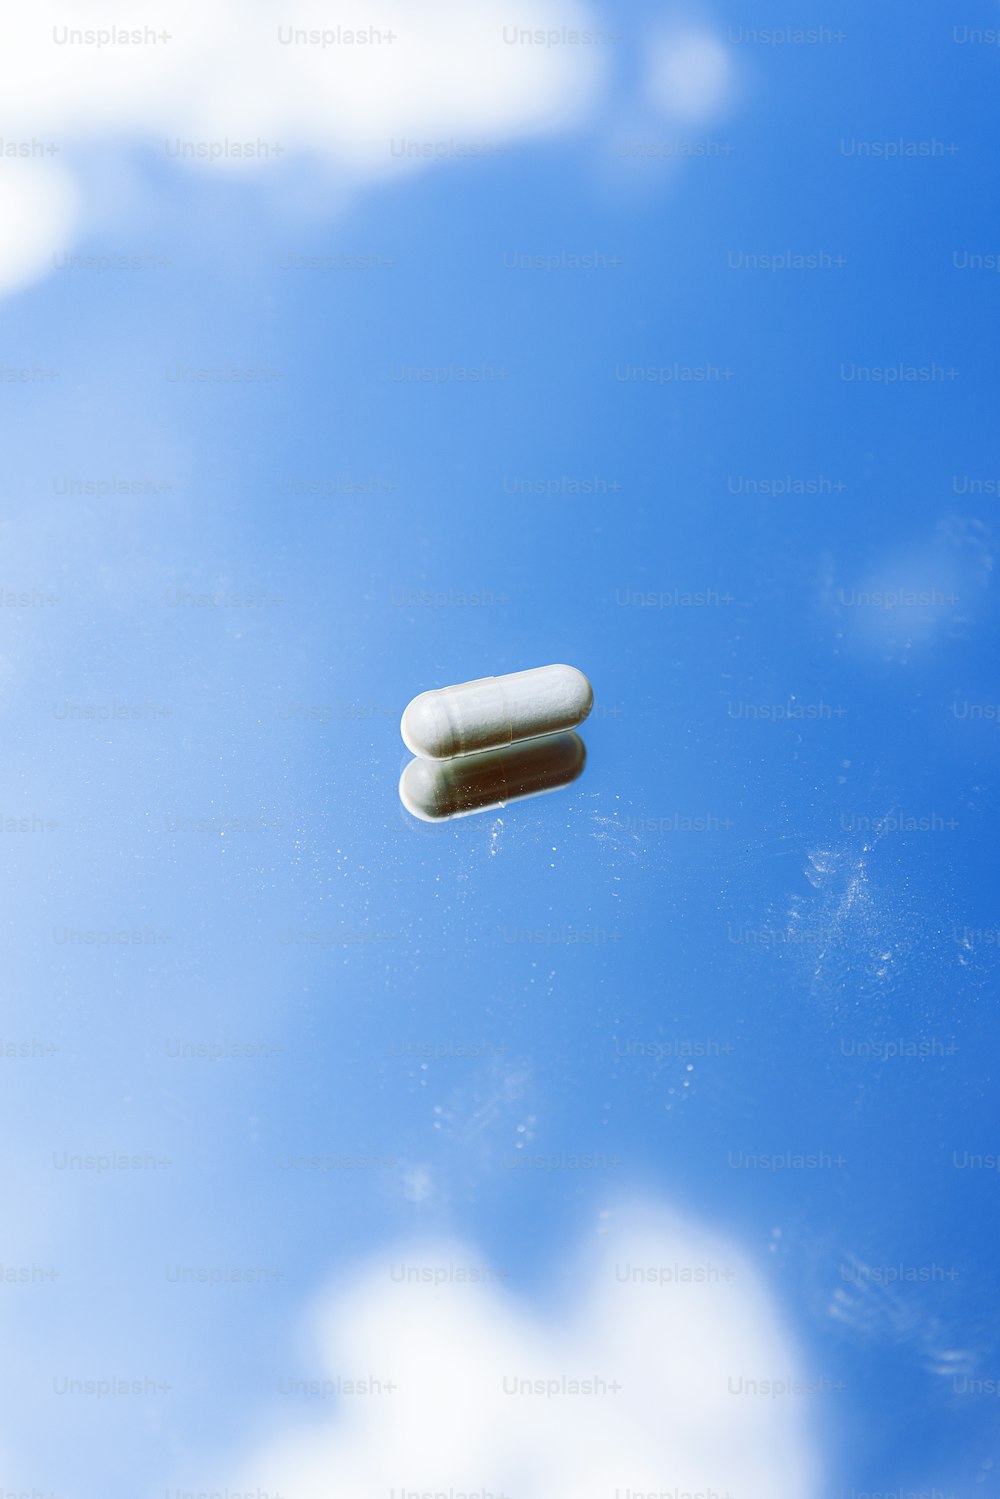 Dos pastillas flotando en el aire en un día nublado